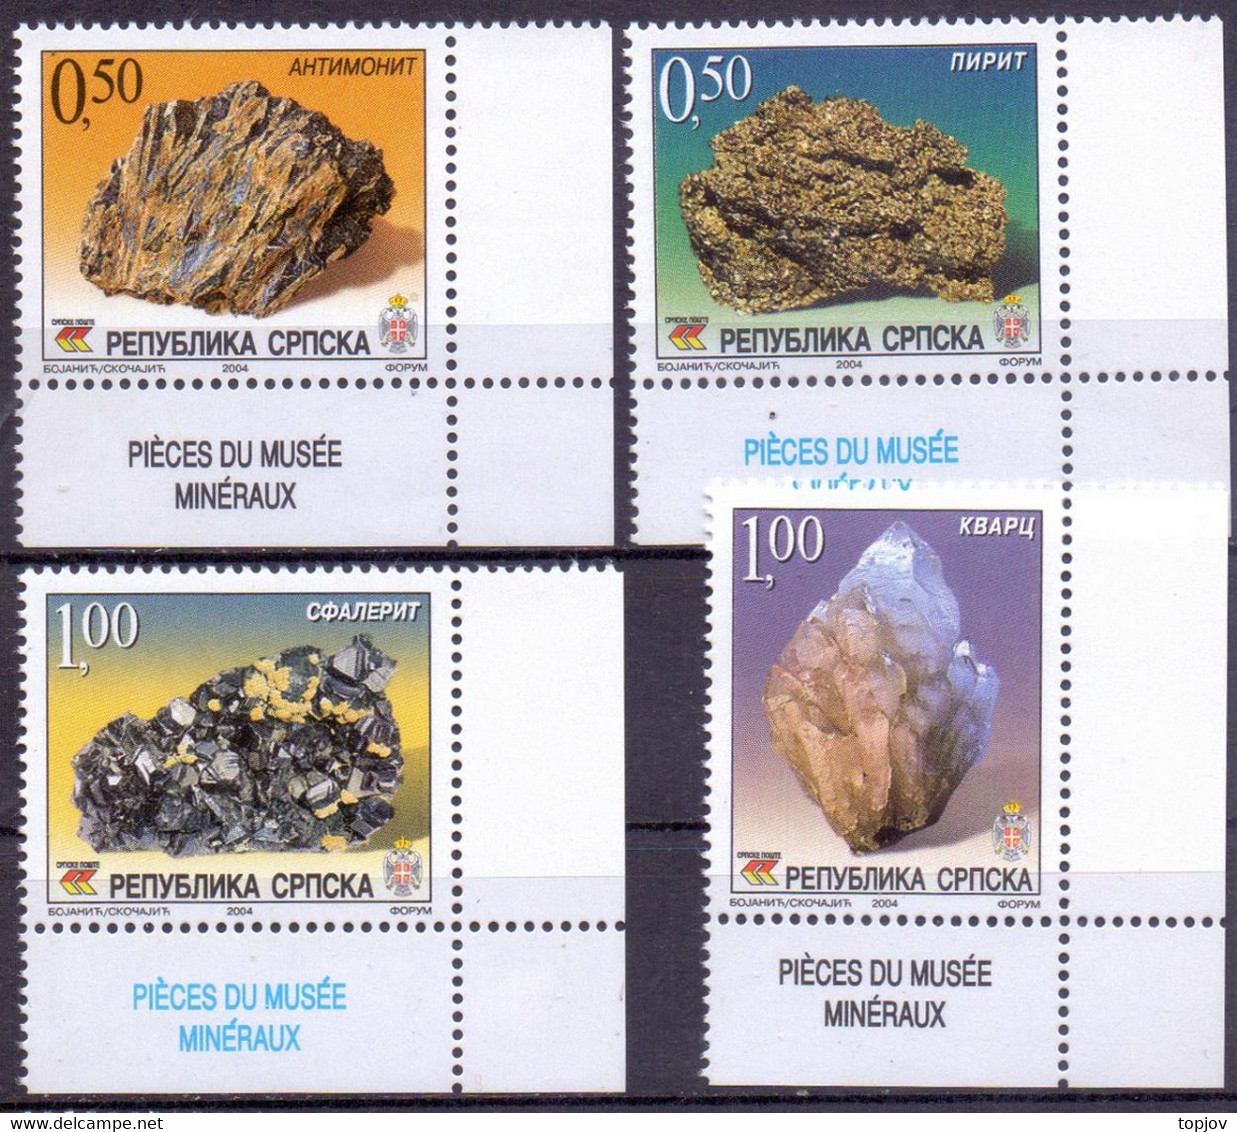 BOSNIA - R. SRPSKA - MINERALES - STONES - **MNH - 2004 - Minéraux